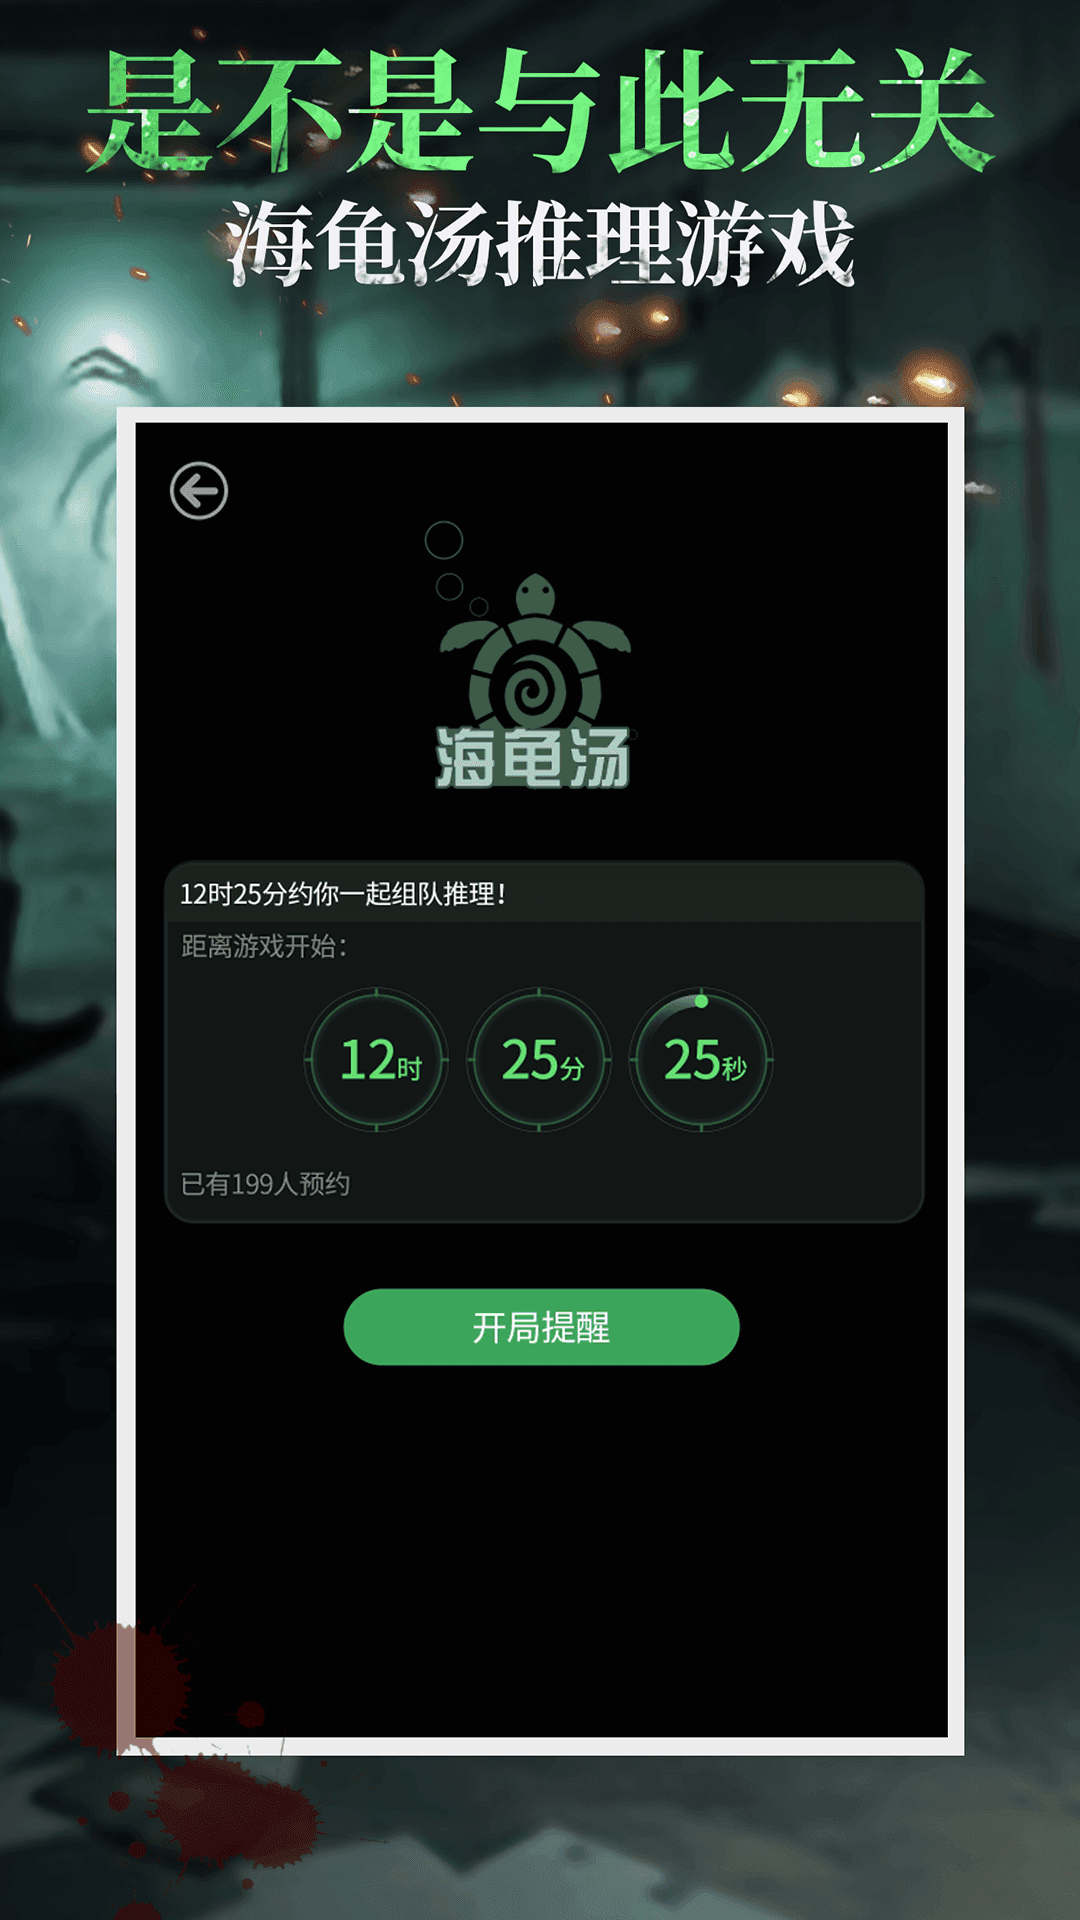 海龟汤游戏下载 海龟汤最新版下载v5 0 0 微侠手游网